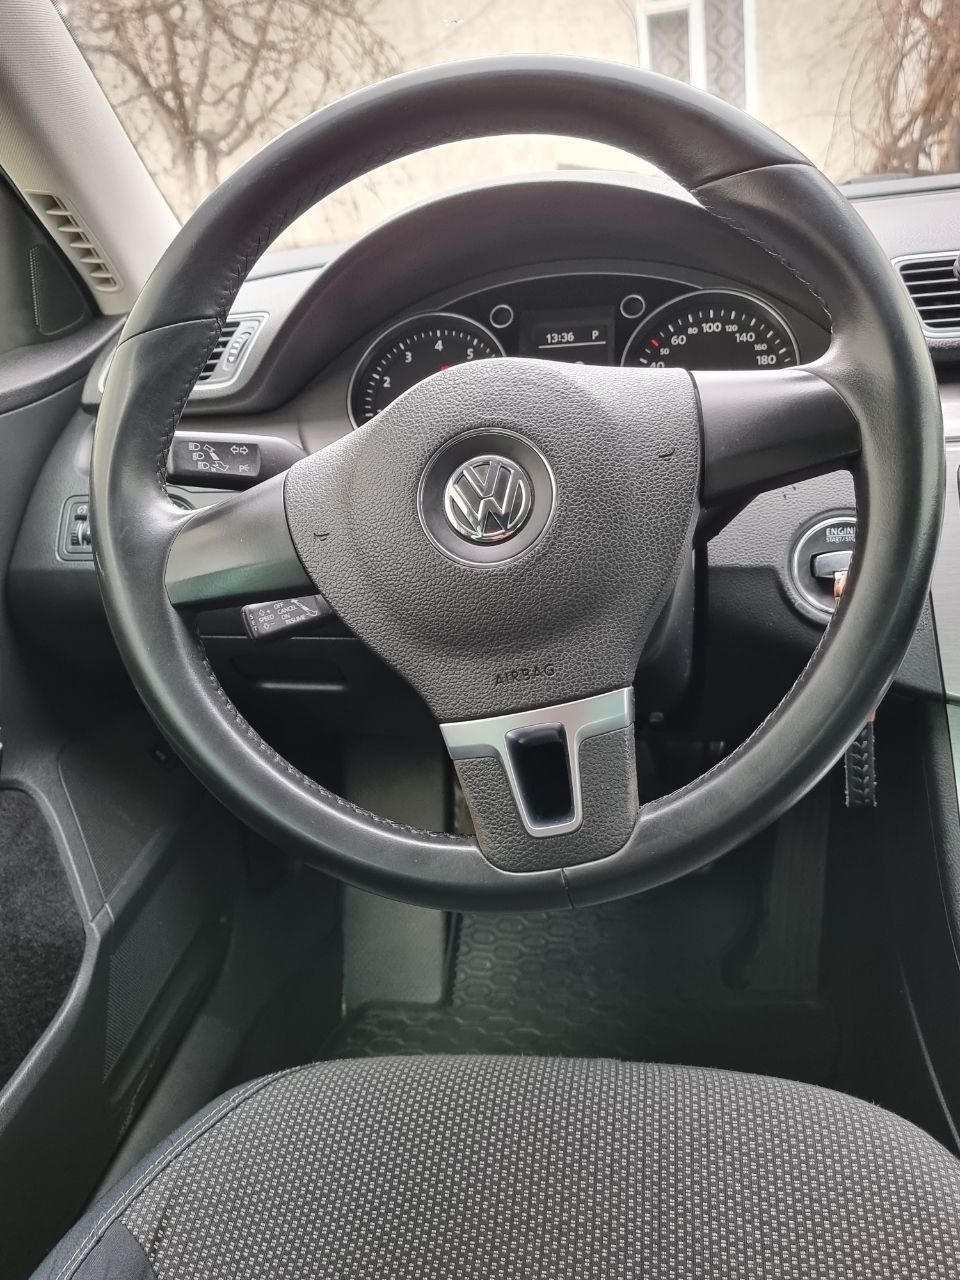 Продам власне авто Volkswagen Passat B7 , 2011р.